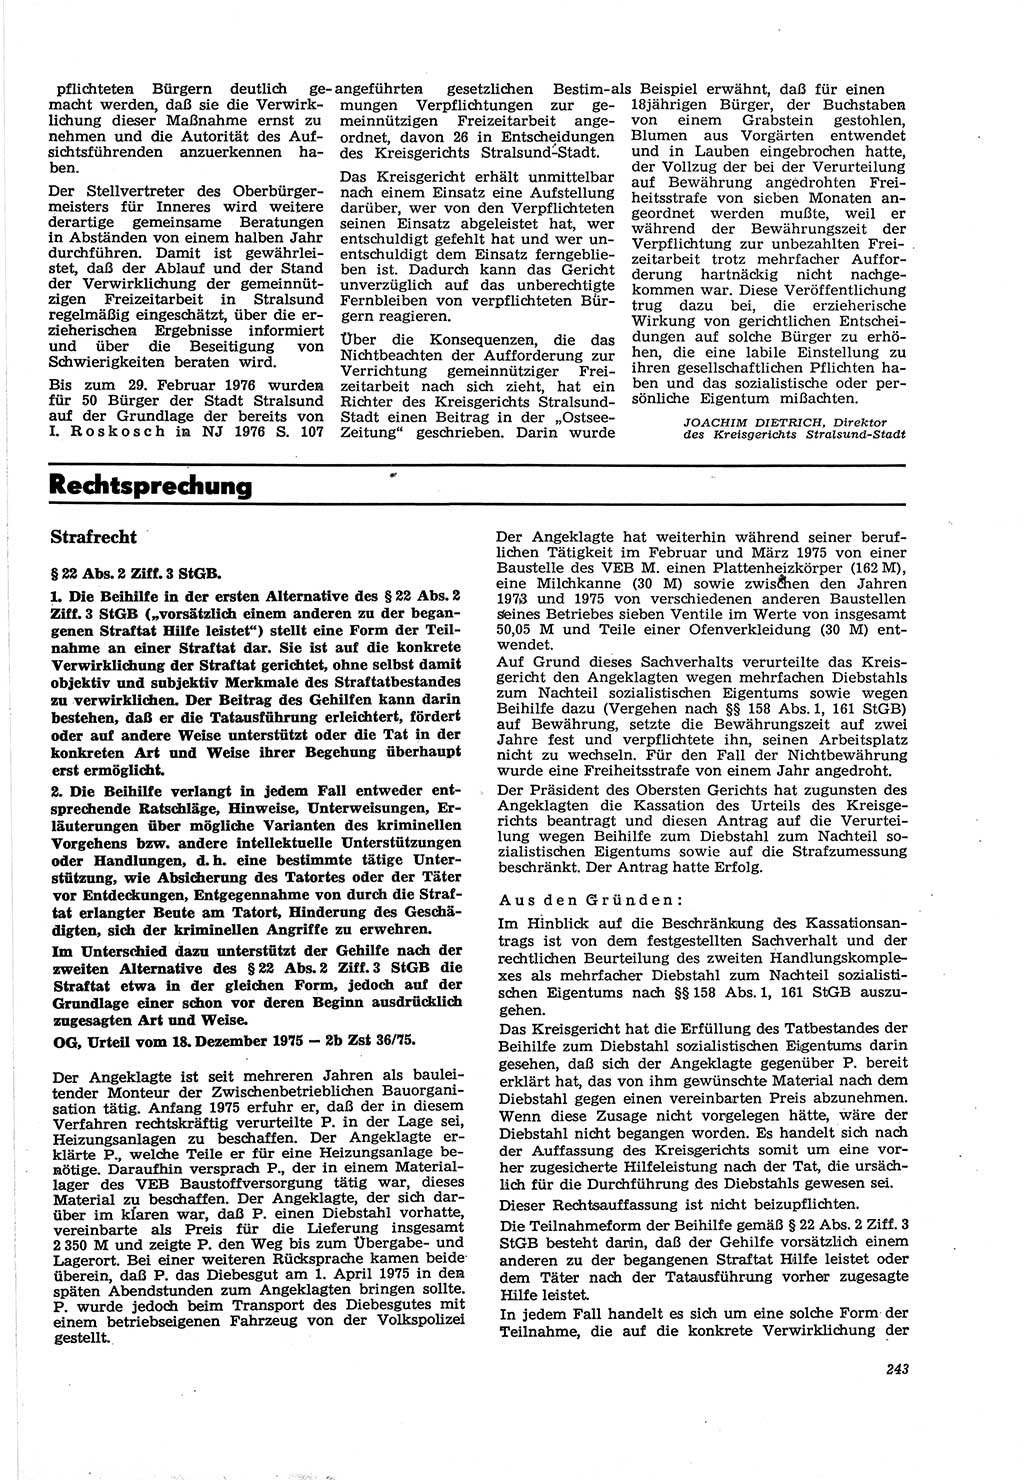 Neue Justiz (NJ), Zeitschrift für Recht und Rechtswissenschaft [Deutsche Demokratische Republik (DDR)], 30. Jahrgang 1976, Seite 243 (NJ DDR 1976, S. 243)